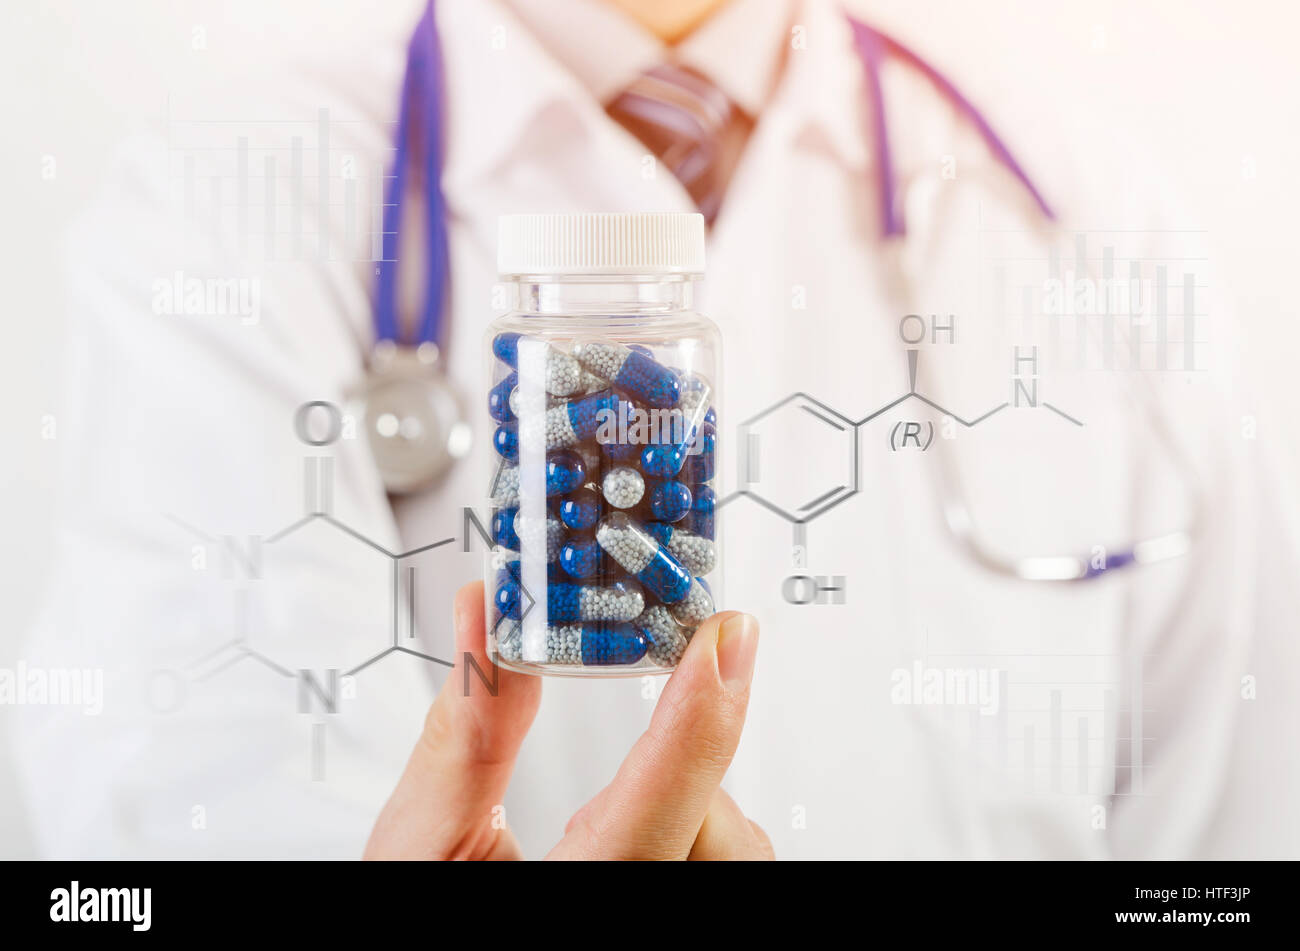 Arzt-Wissenschaftler erfand neue Droge, Kapsel in Händen hält. Pille Medizin Wissenschaft Entdeckung Formel chemische Testkonzept Stockfoto